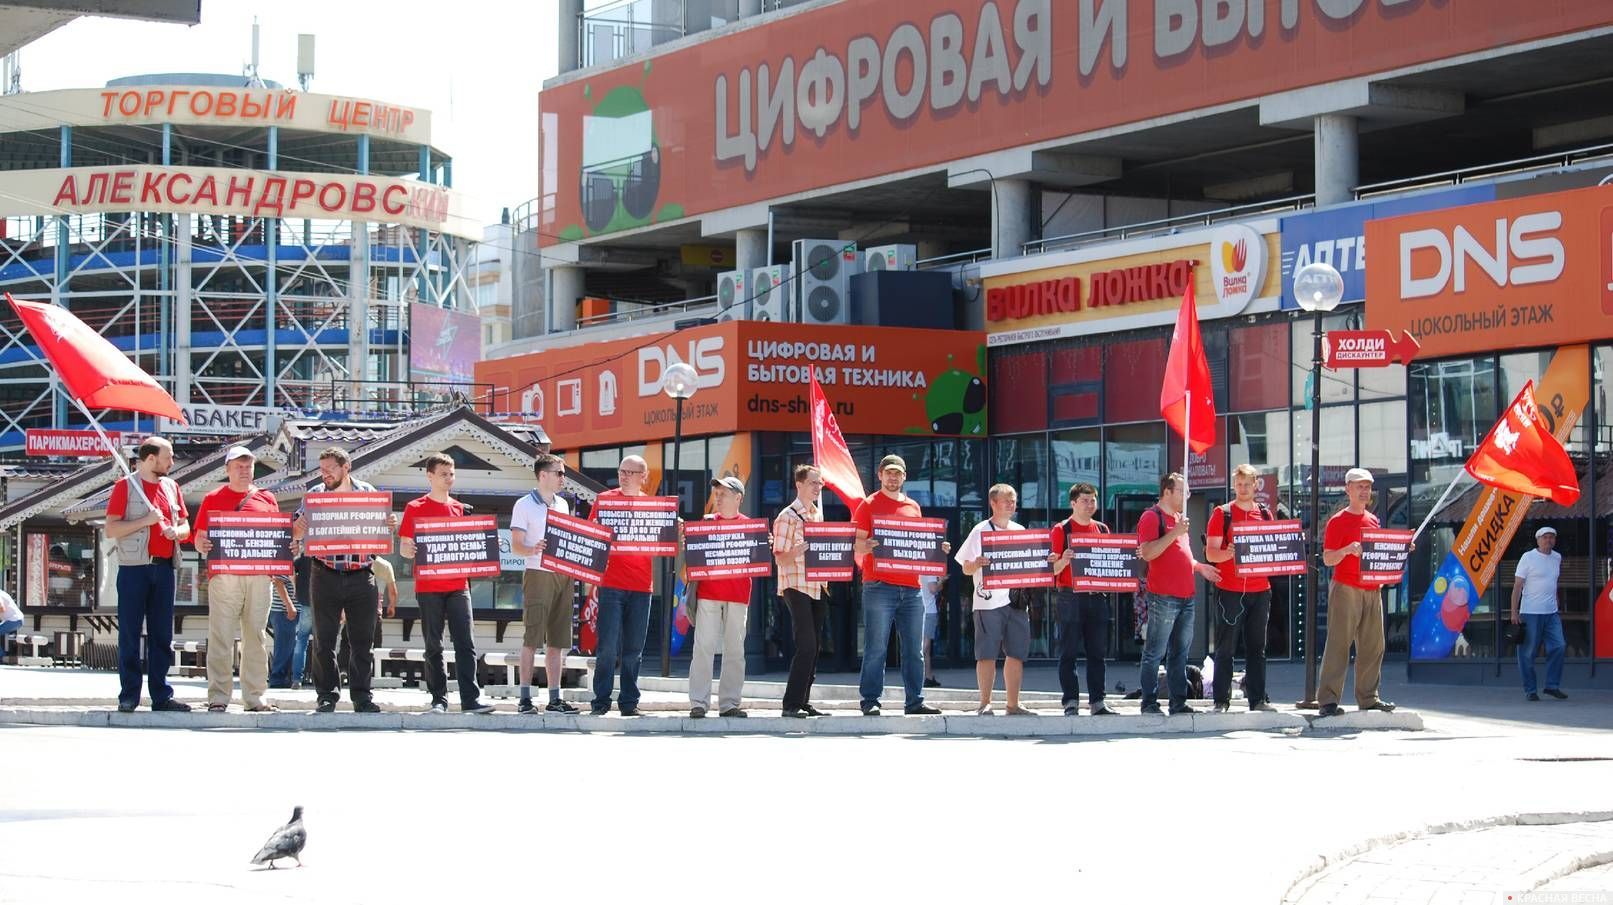 Пикет против пенсионной реформы. Новосибирск, 03.08.2019